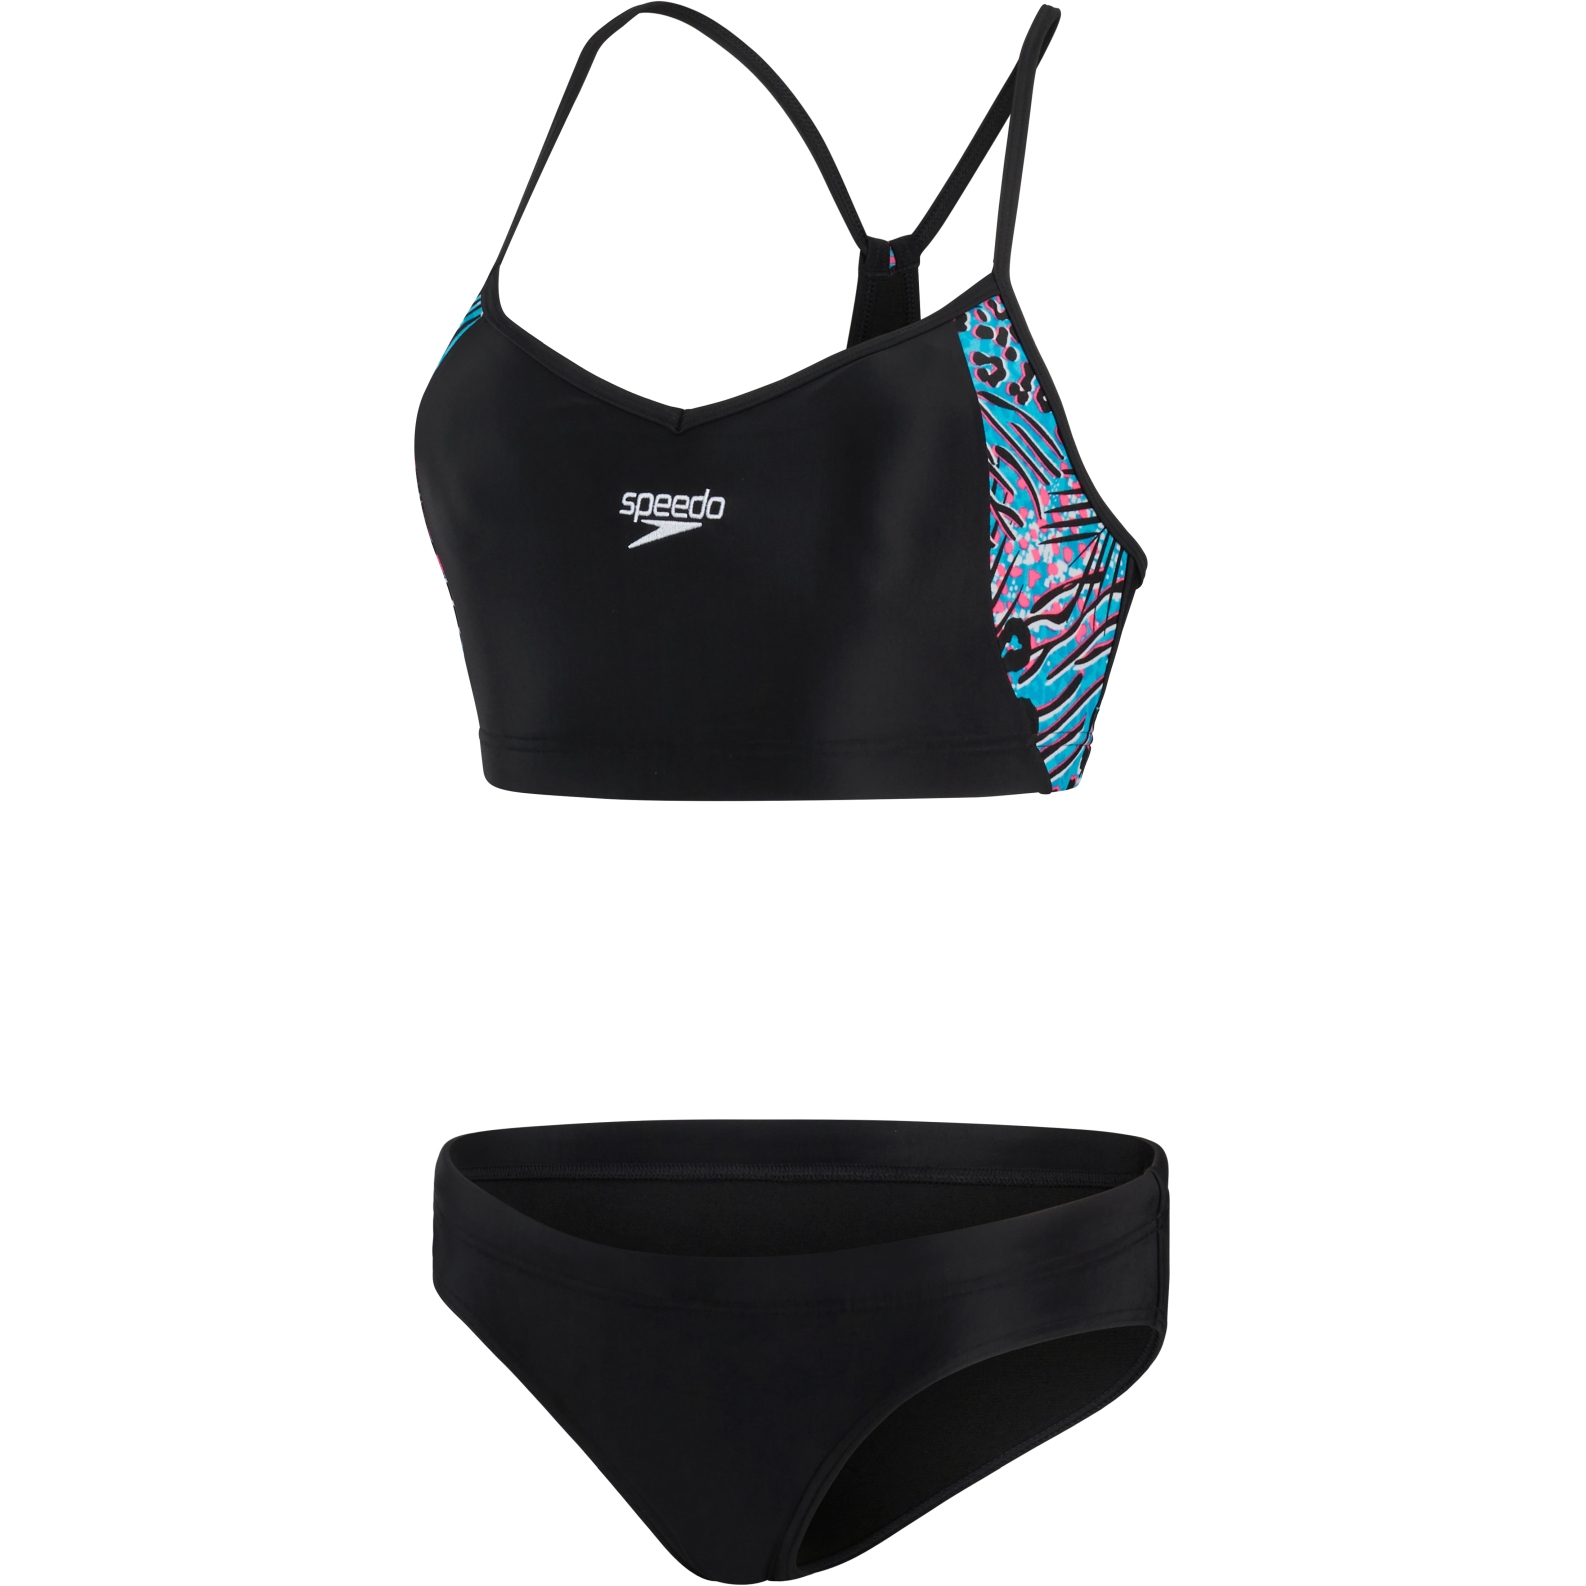 Produktbild von Speedo Volley Thinstrap 2PC Bikini Damen - black/hypersonic/pool/fluo pink/white